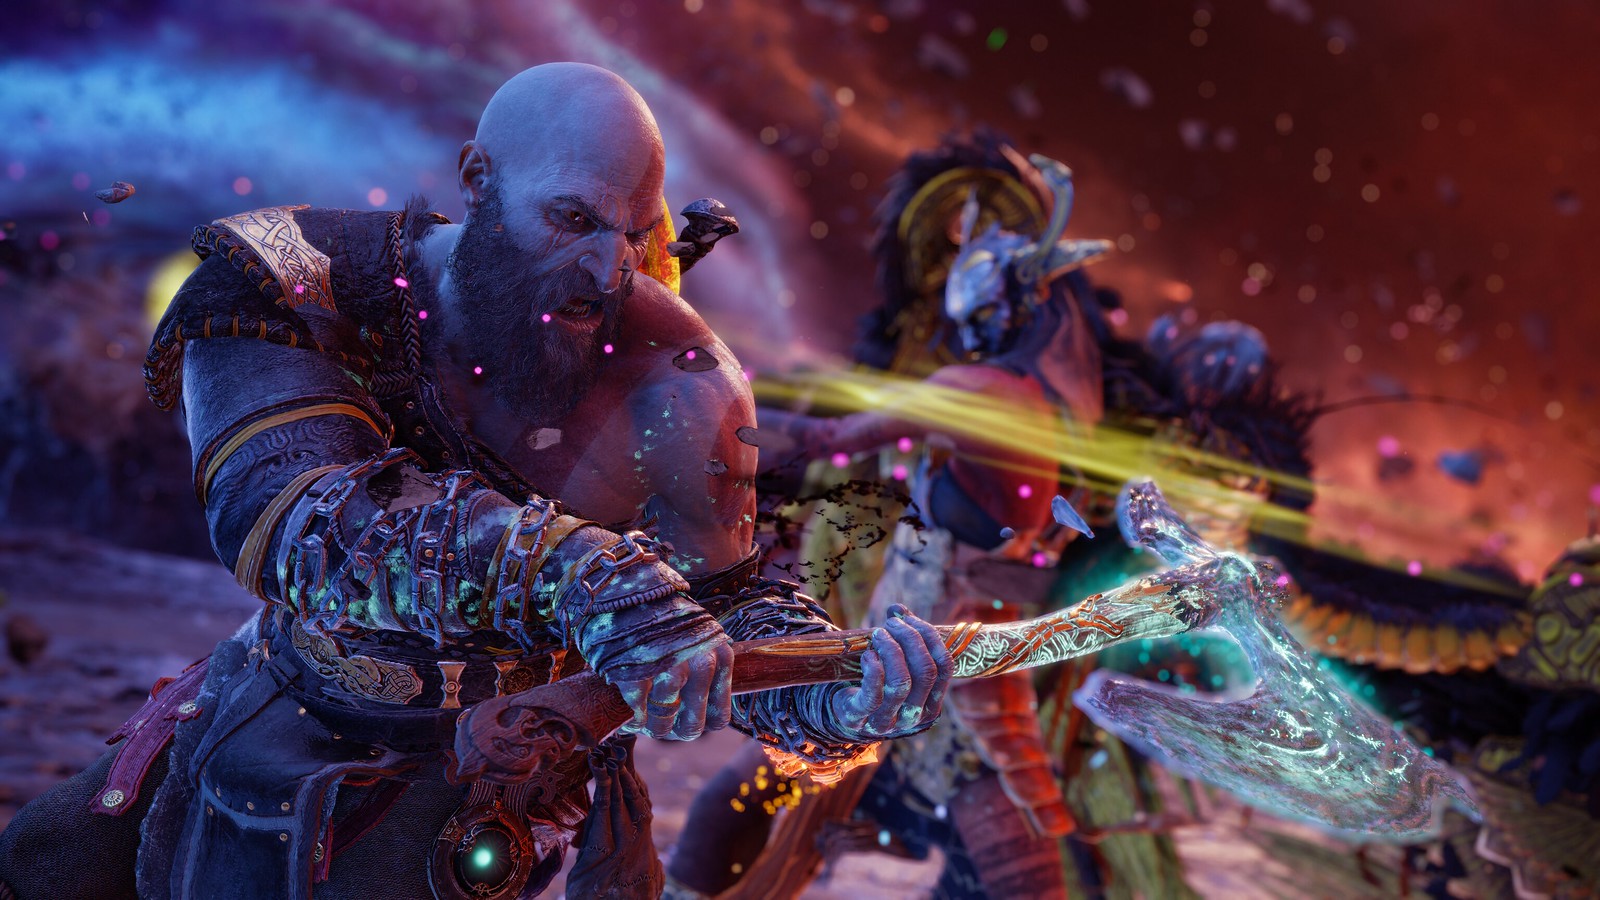 God of War' vai ganhar nova história focada no Ragnarok em 2021, Games